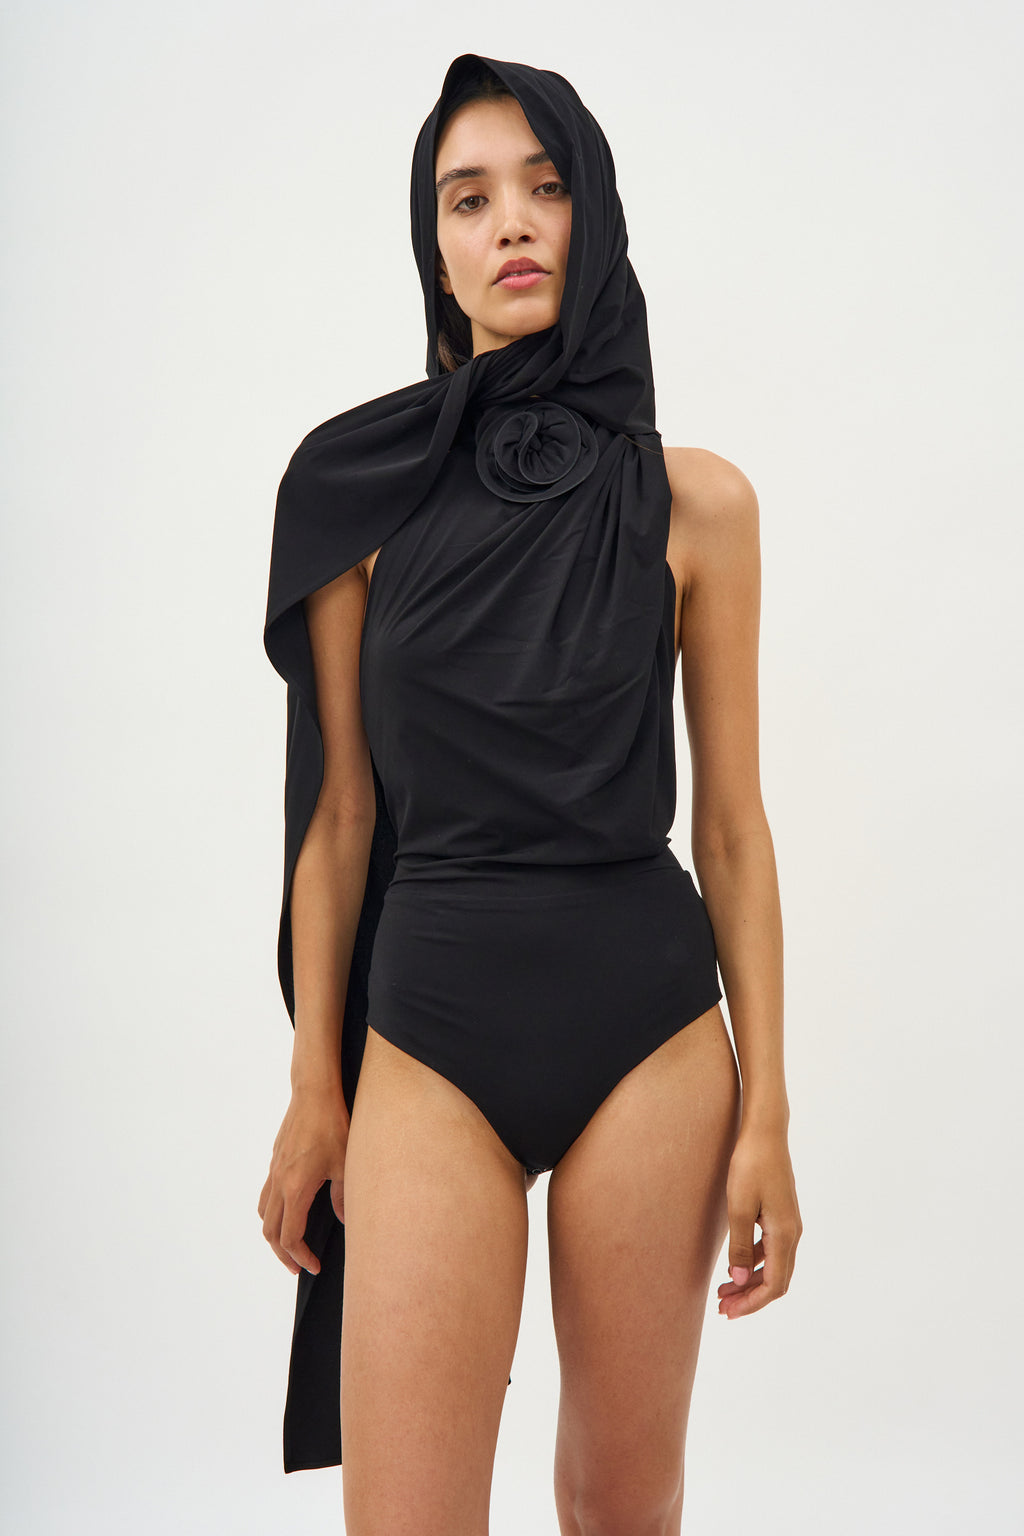 Hooded Backless Black Bodysuit